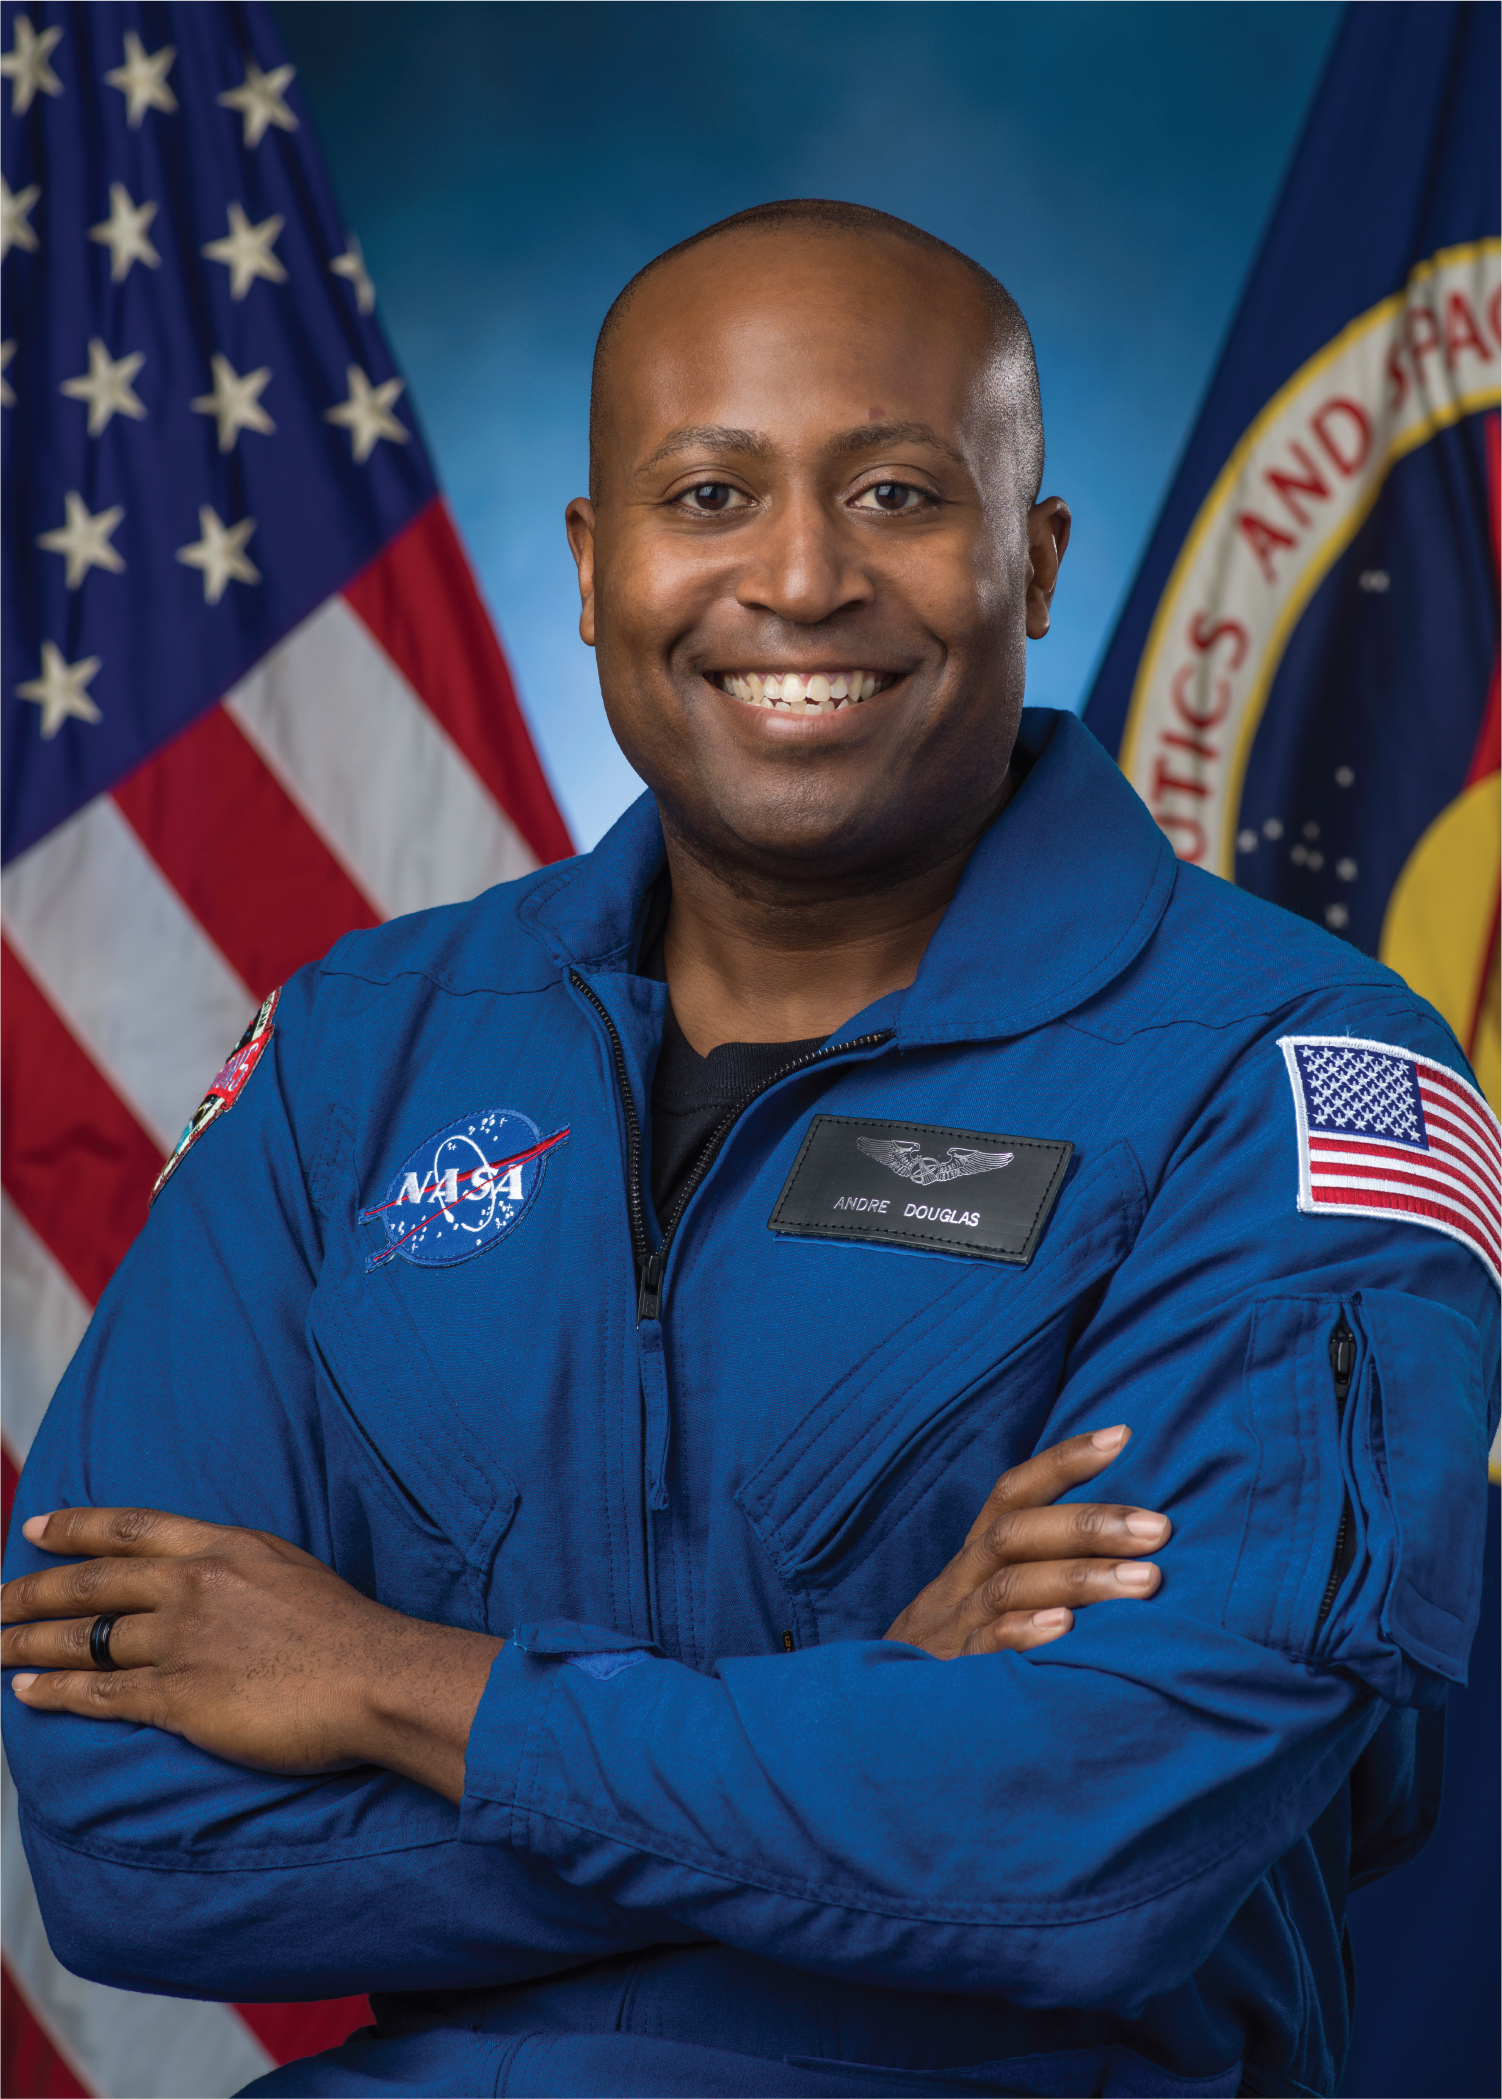 Astronaut Andre Douglas